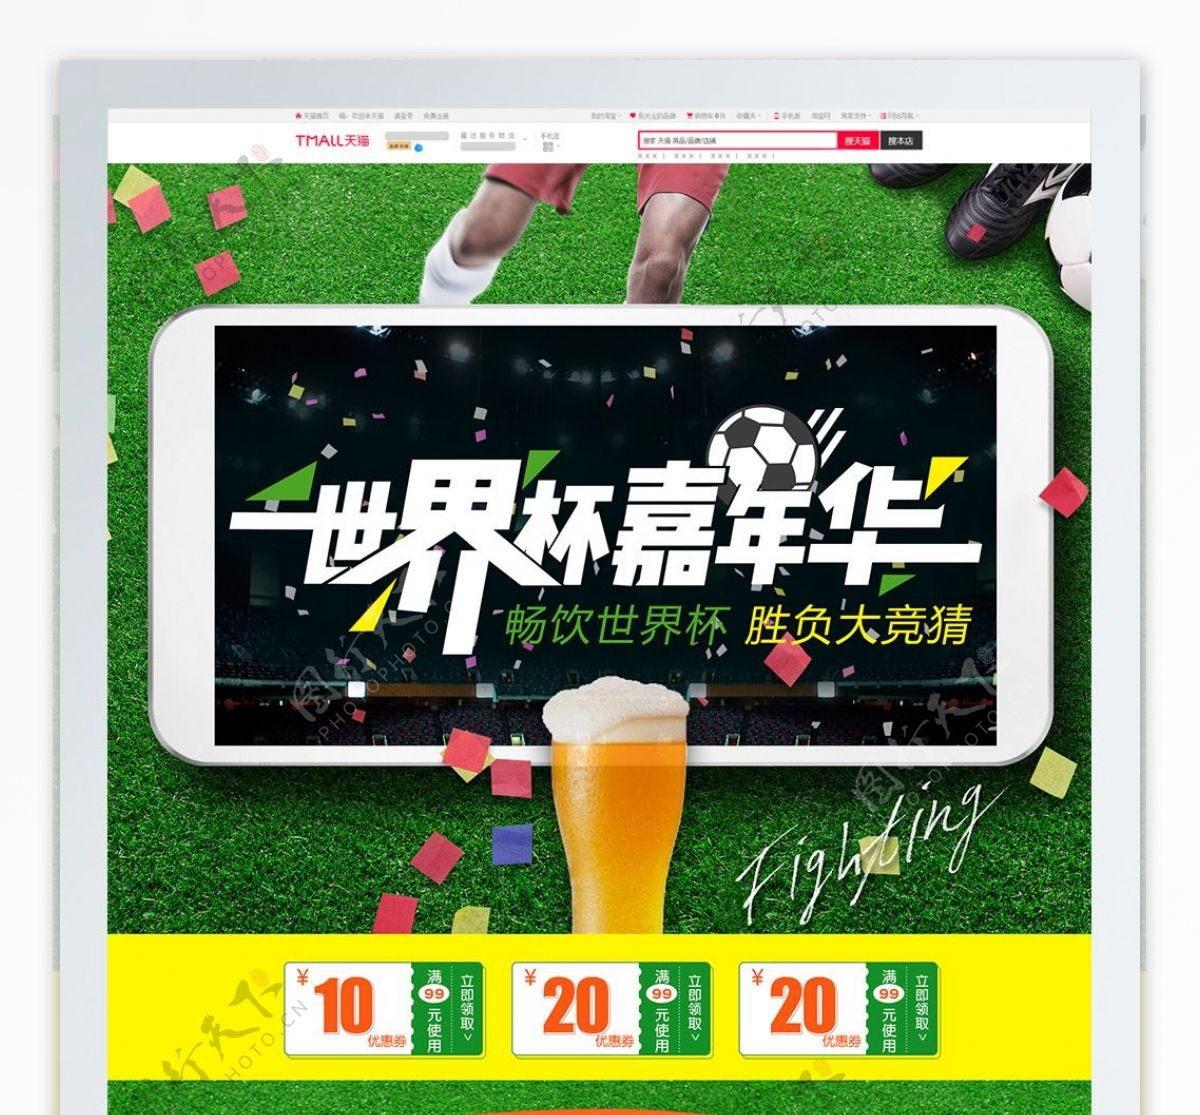 淘宝天猫足球世界杯啤酒食品首页